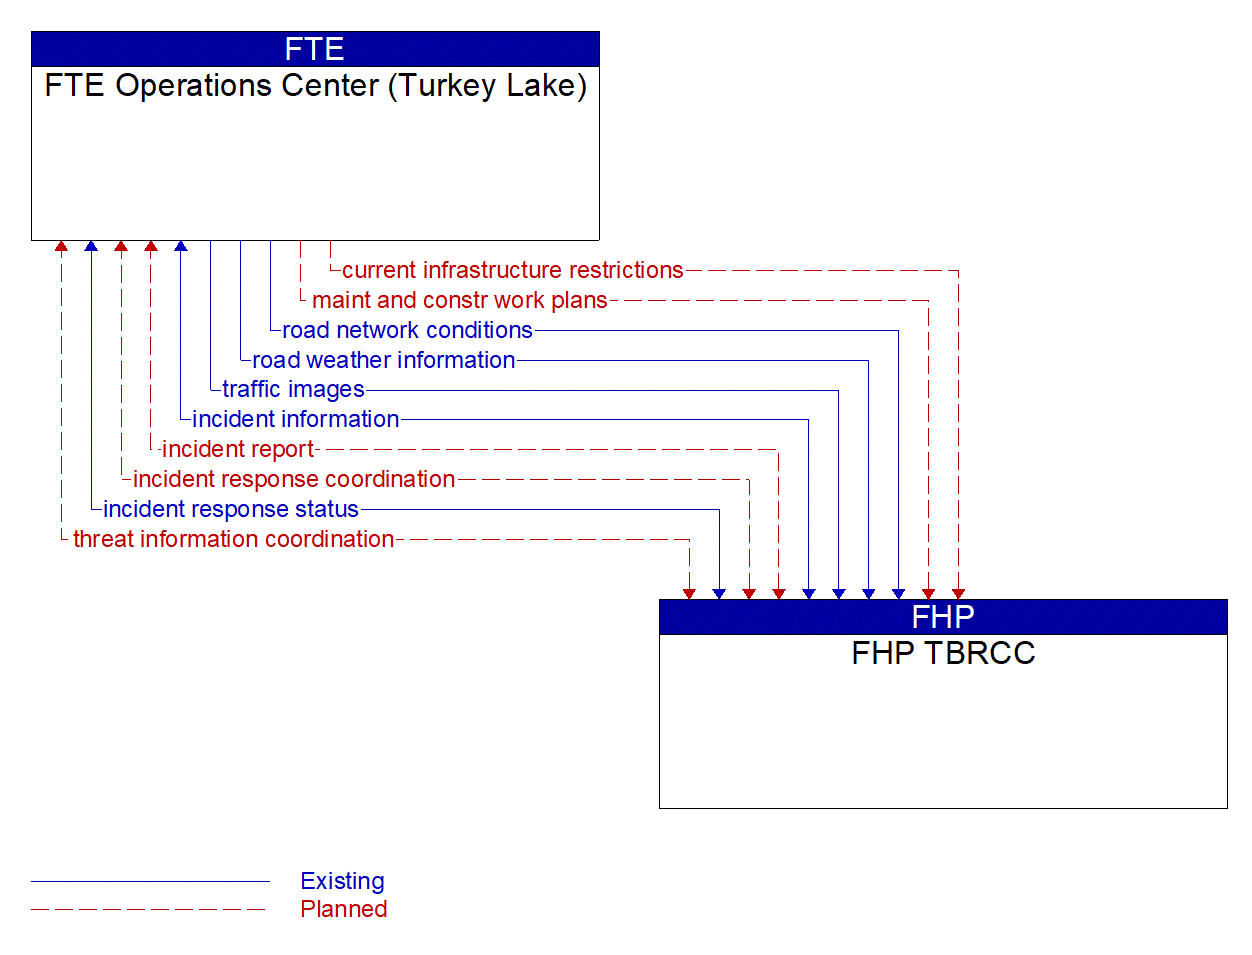 Architecture Flow Diagram: FHP TBRCC <--> FTE Operations Center (Turkey Lake)